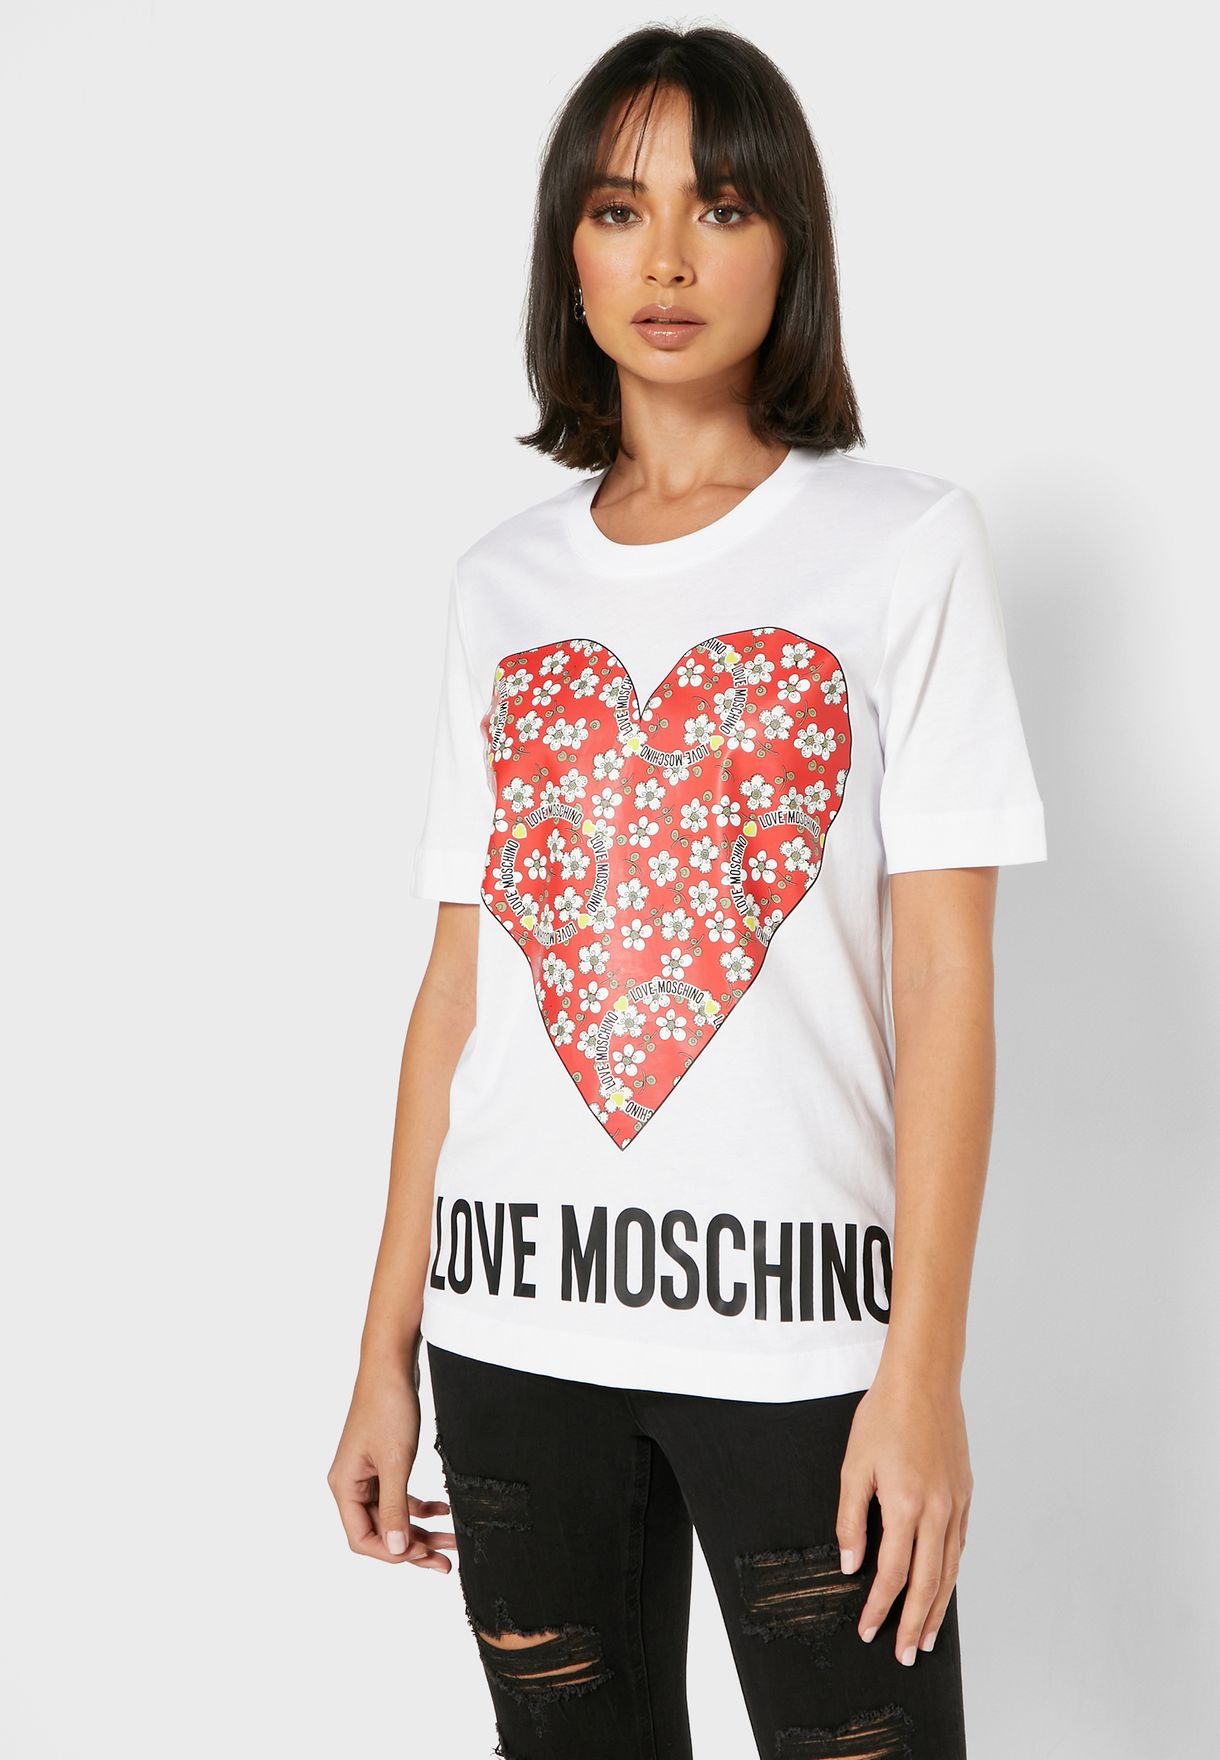 buy moschino t shirt